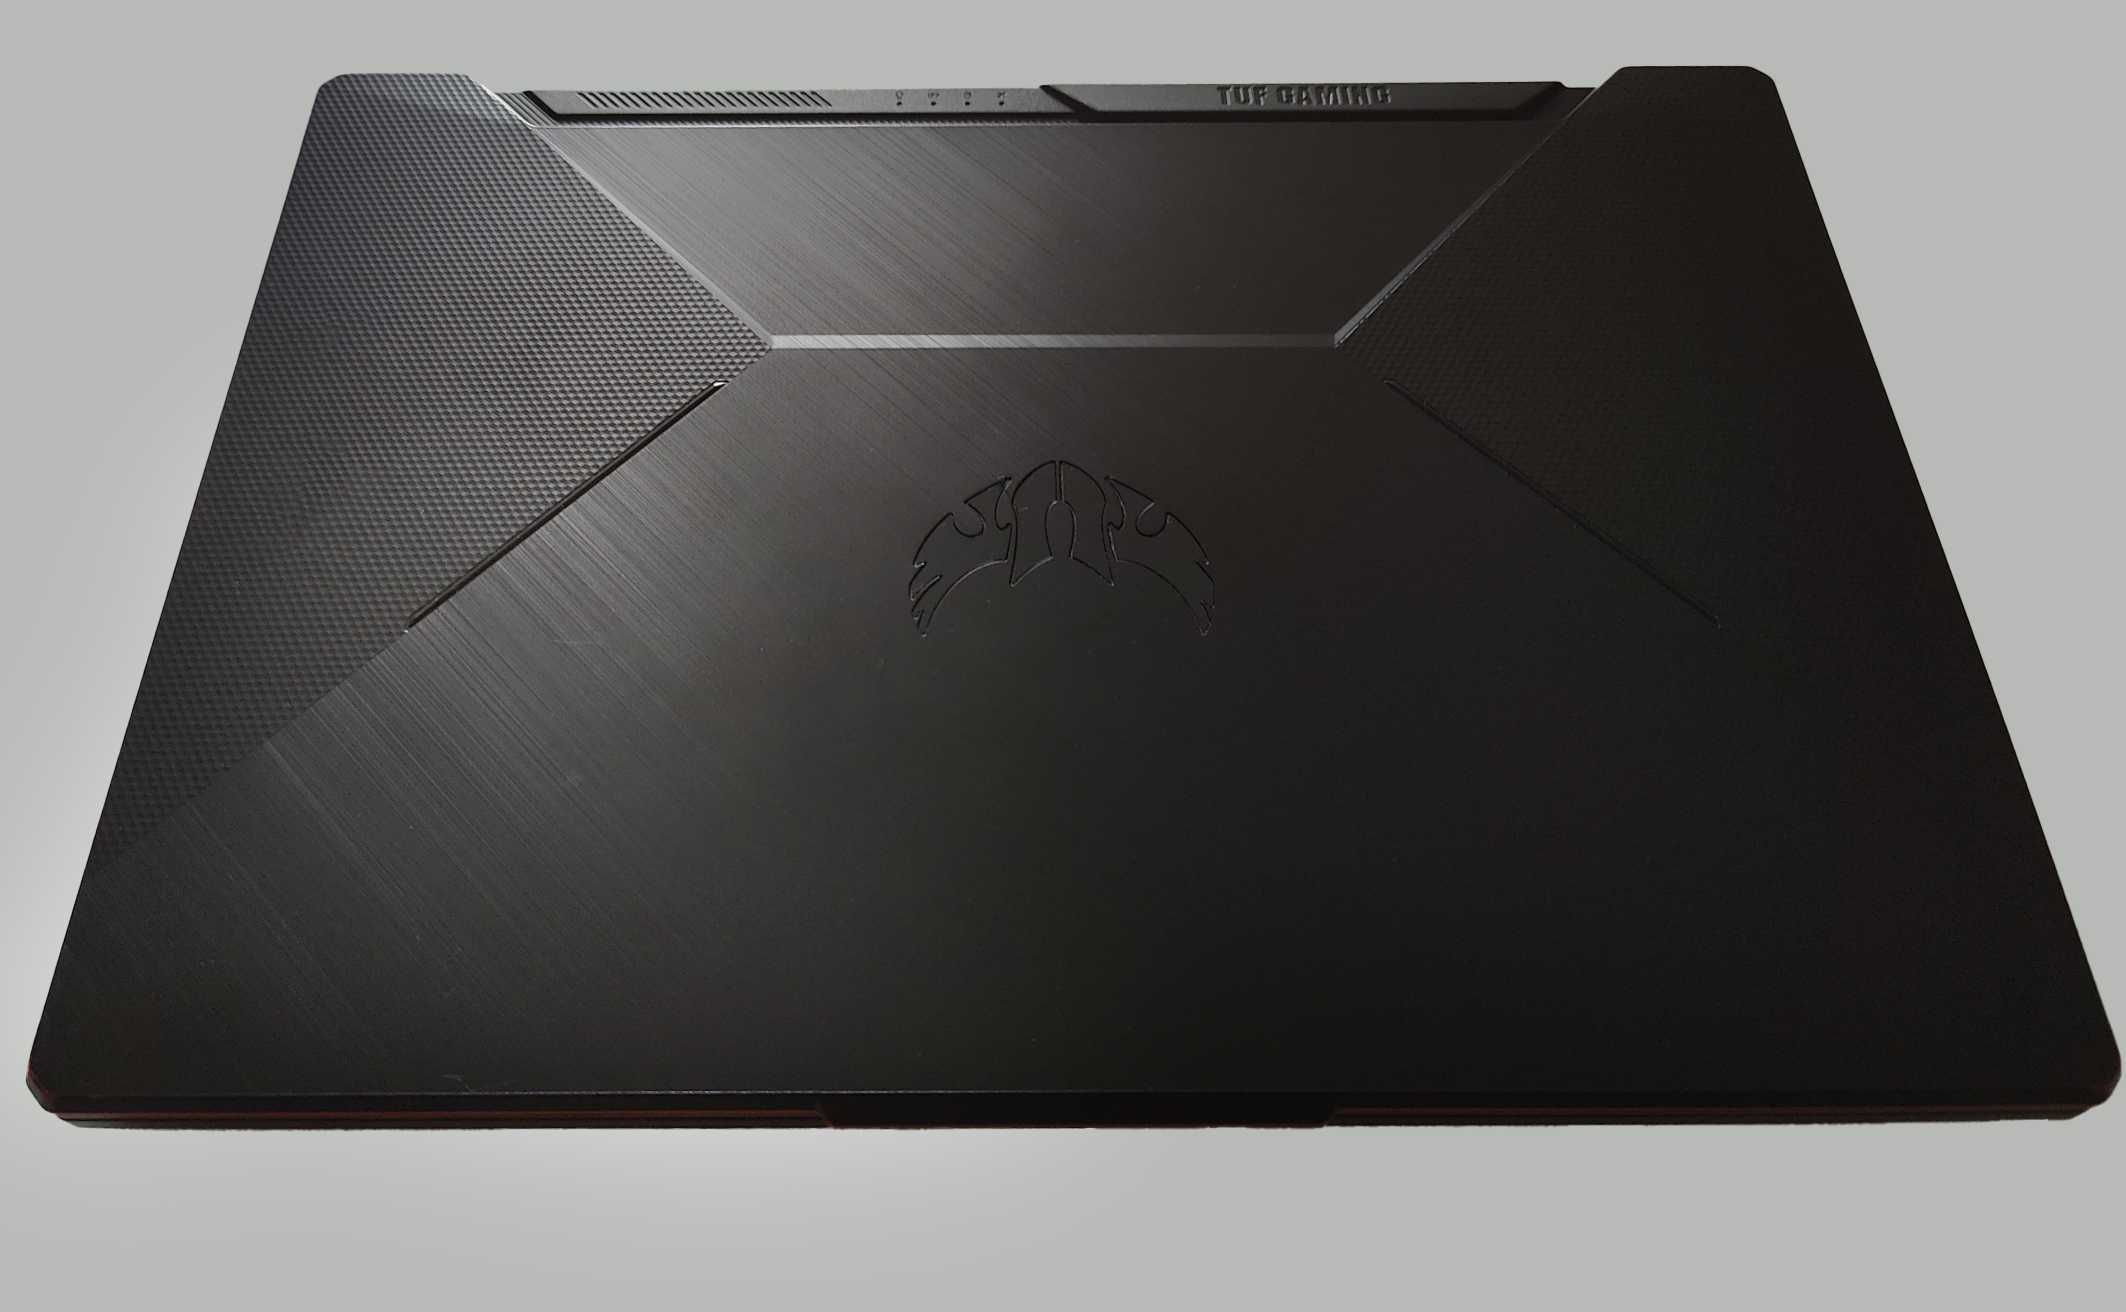 Laptop ASUS TUF Gaming F15, 144HZ, I5 10Th, GTX 1650, 8GB RAM, 512GB